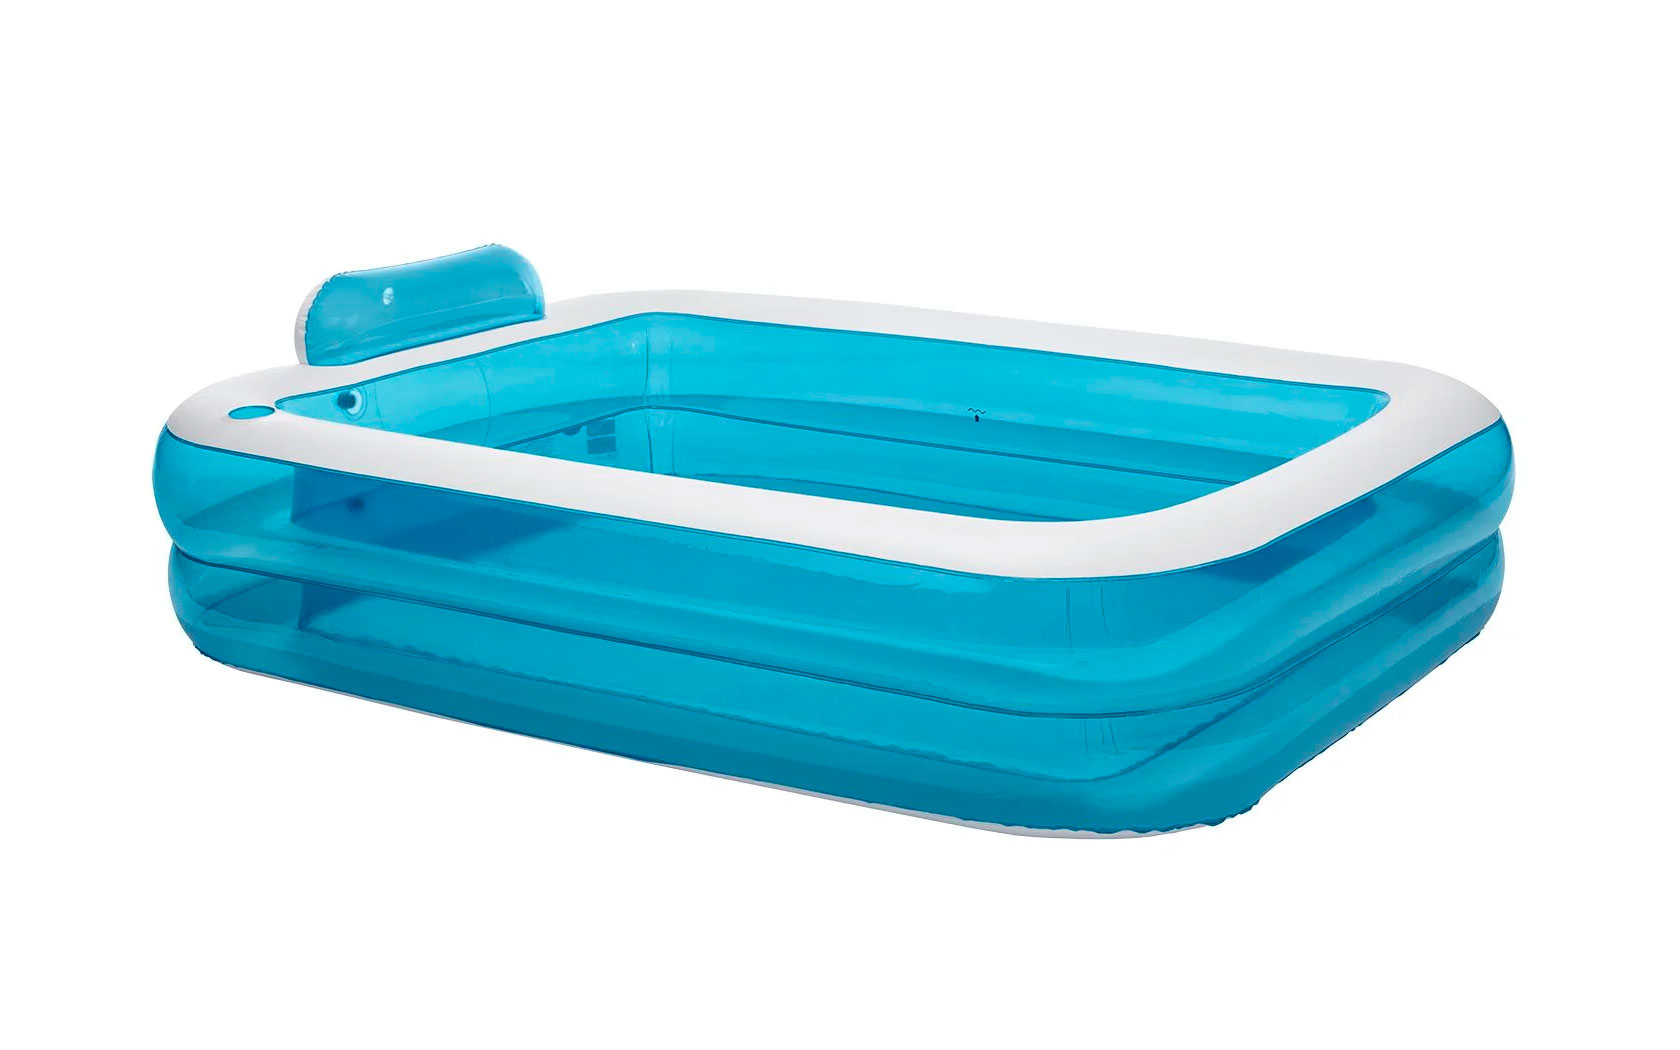 Lidl lanza una piscina hinchable de 600 litros por 19,90 euros